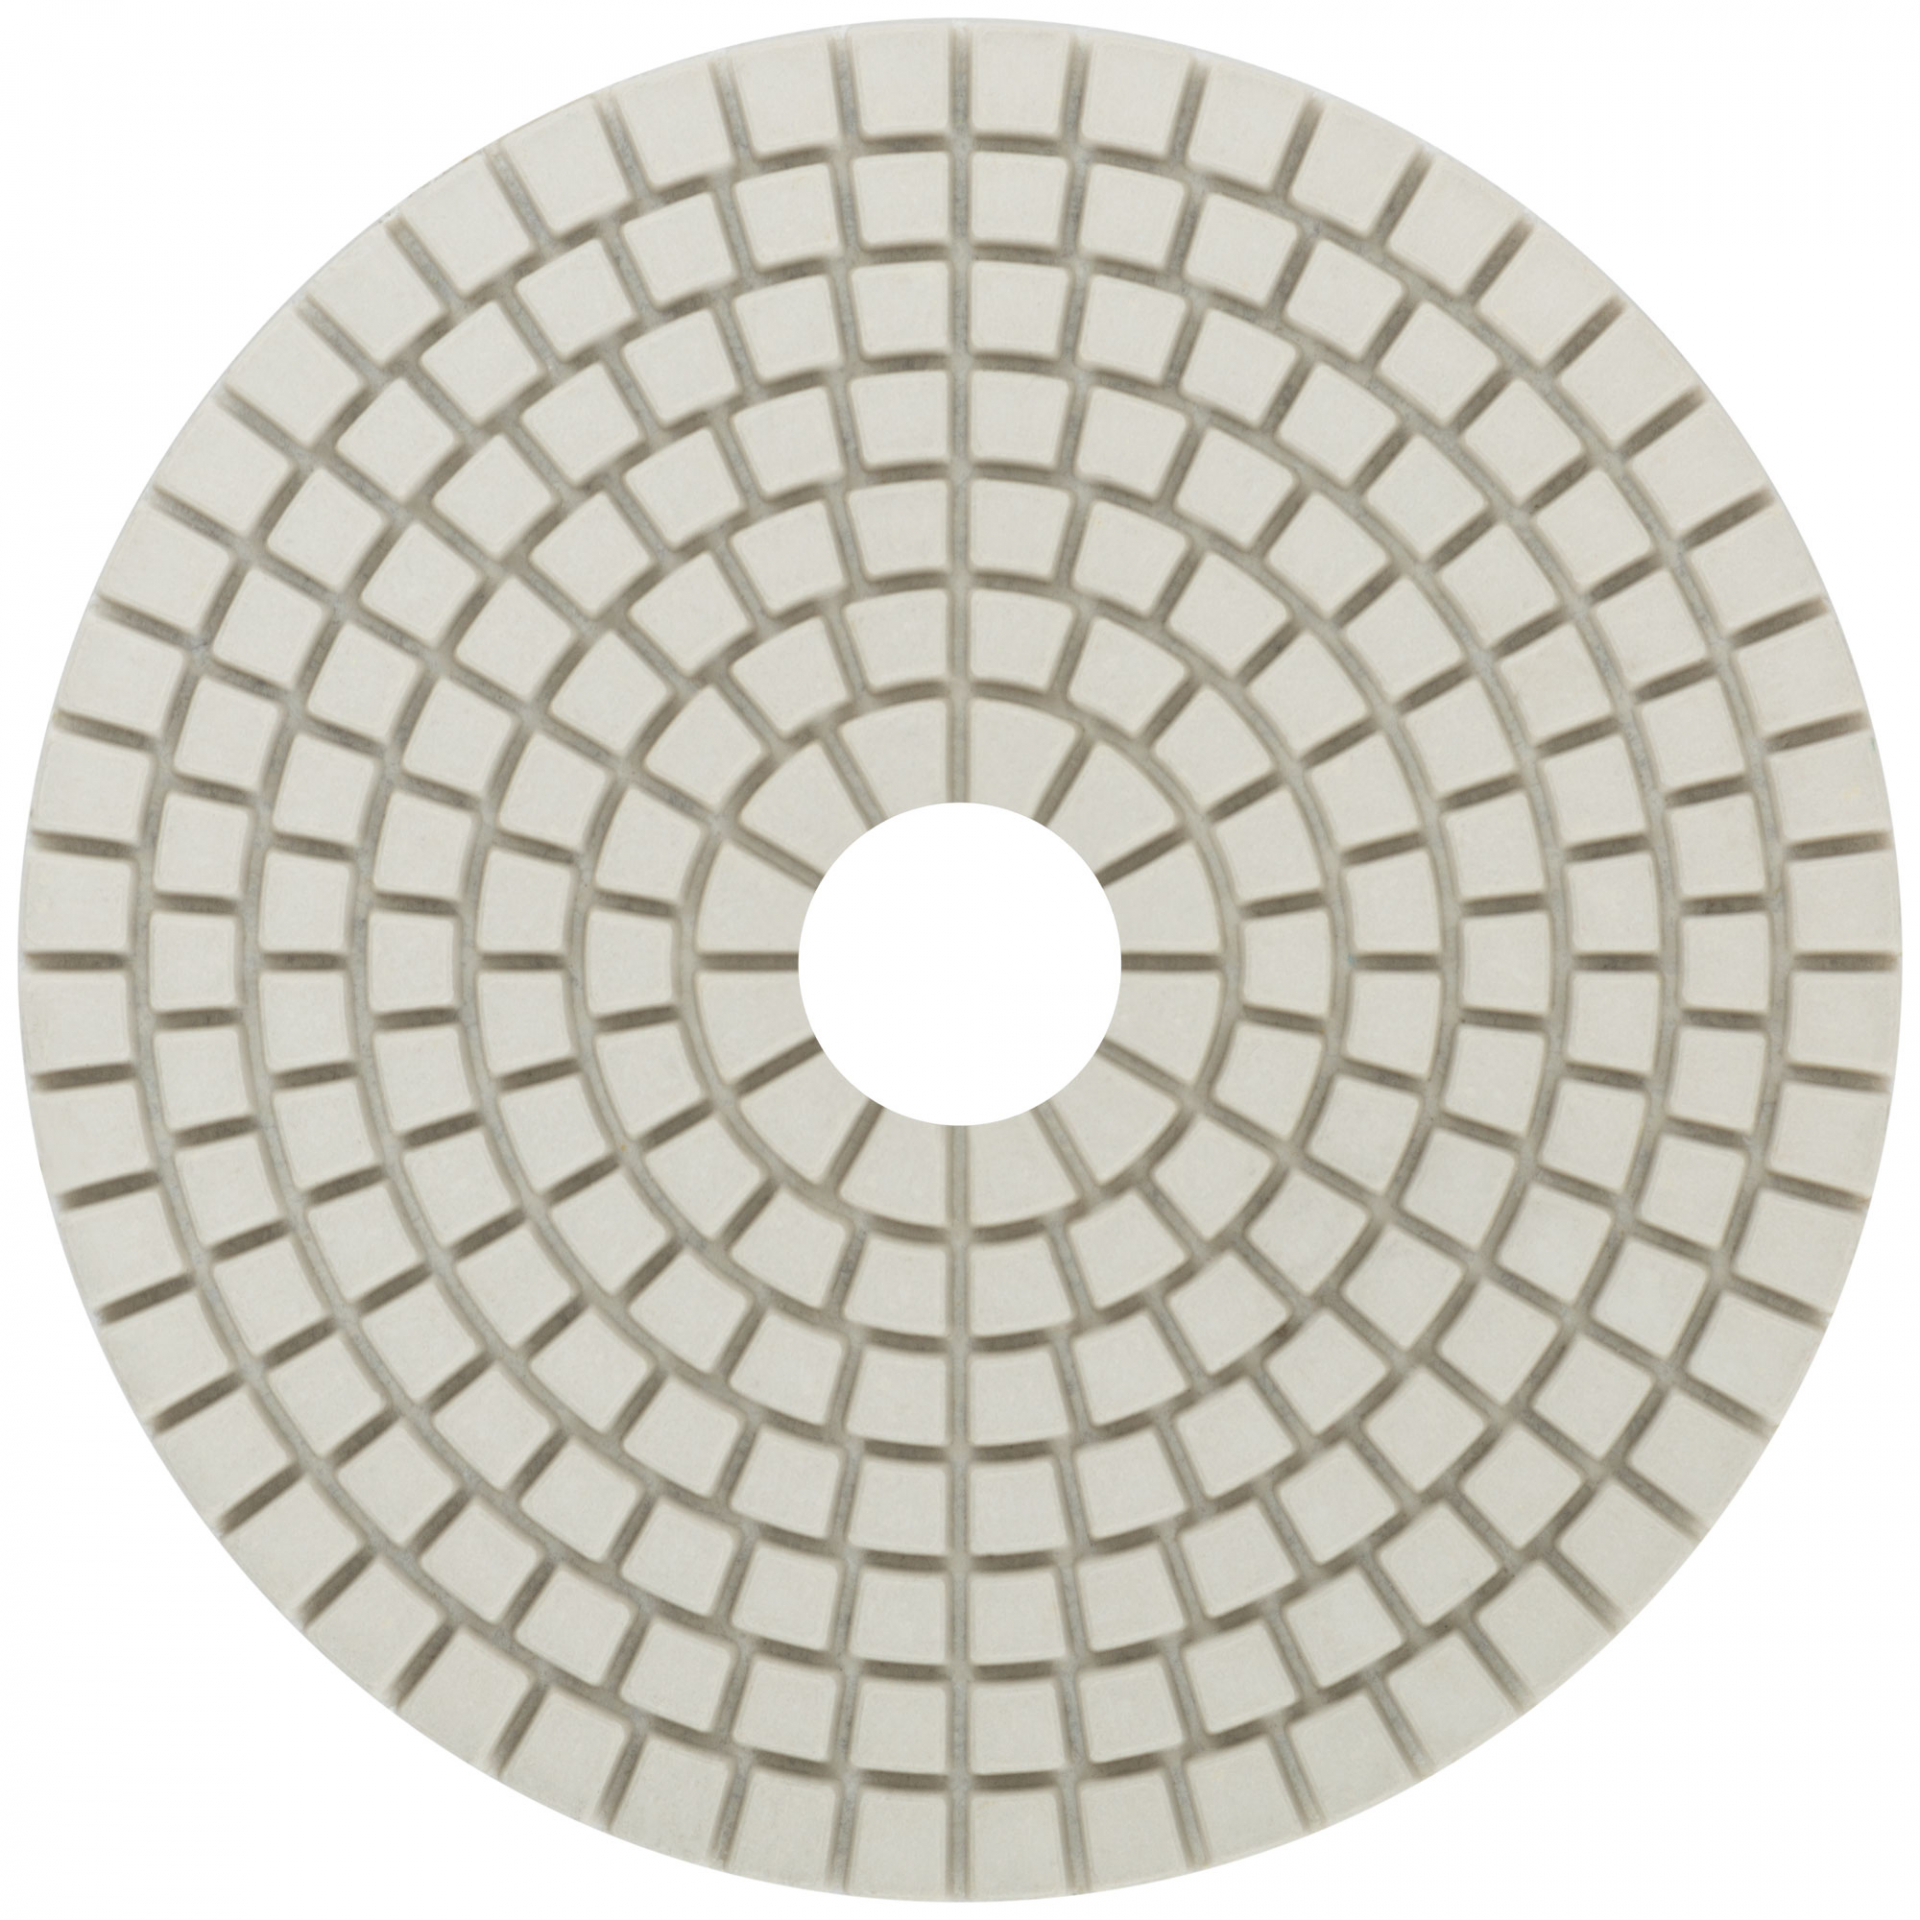 Алмазный гибкий шлифовальный круг (АГШК), 100x3мм, Р3000, Cutop Special